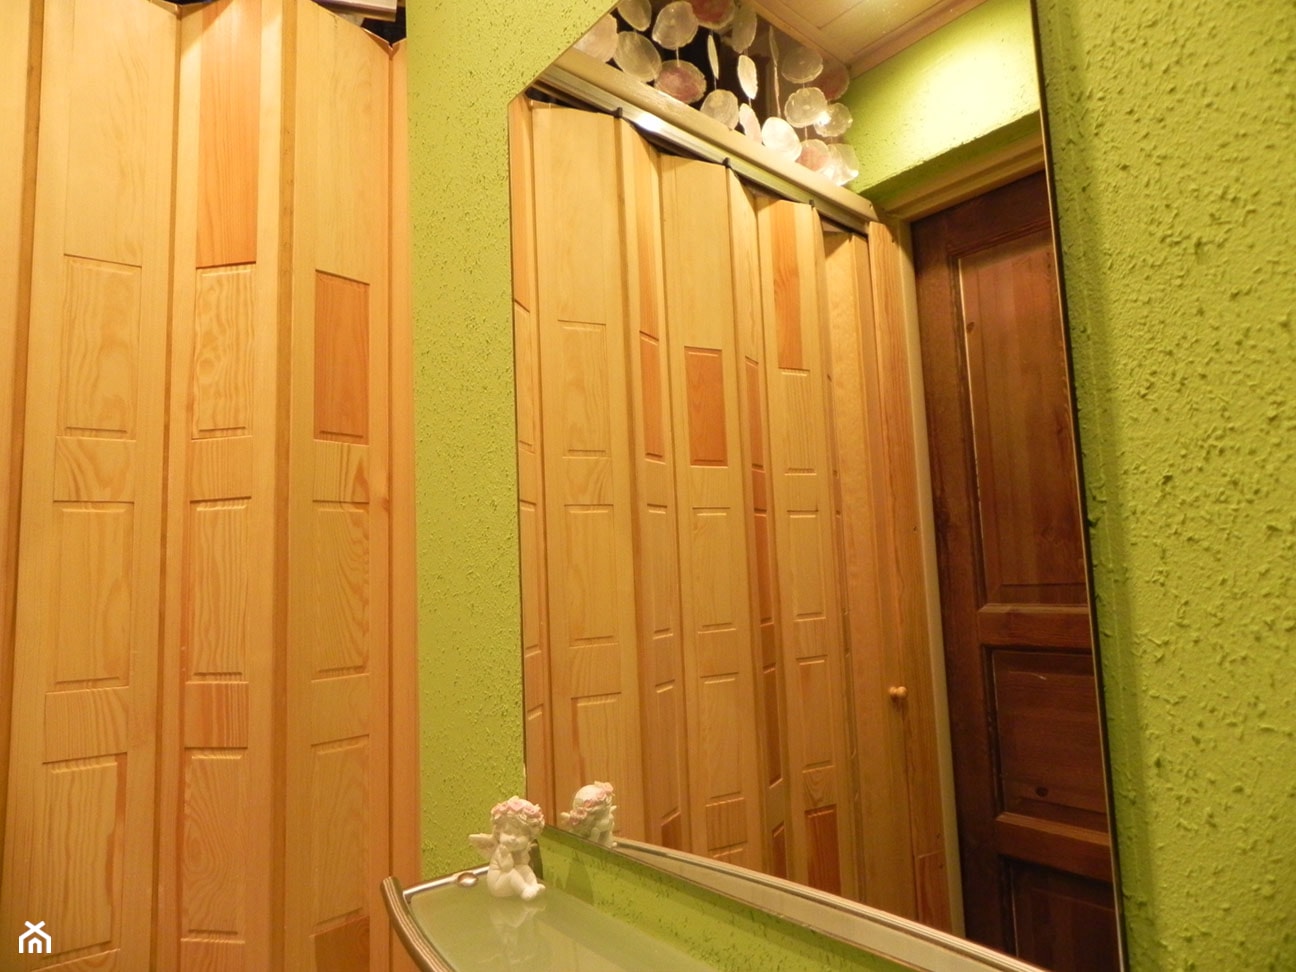 w lustrze odbite drzwi wejściowe, drzwi suwane oddzielające kotłownię - zdjęcie od Joanna Machnowska - Homebook